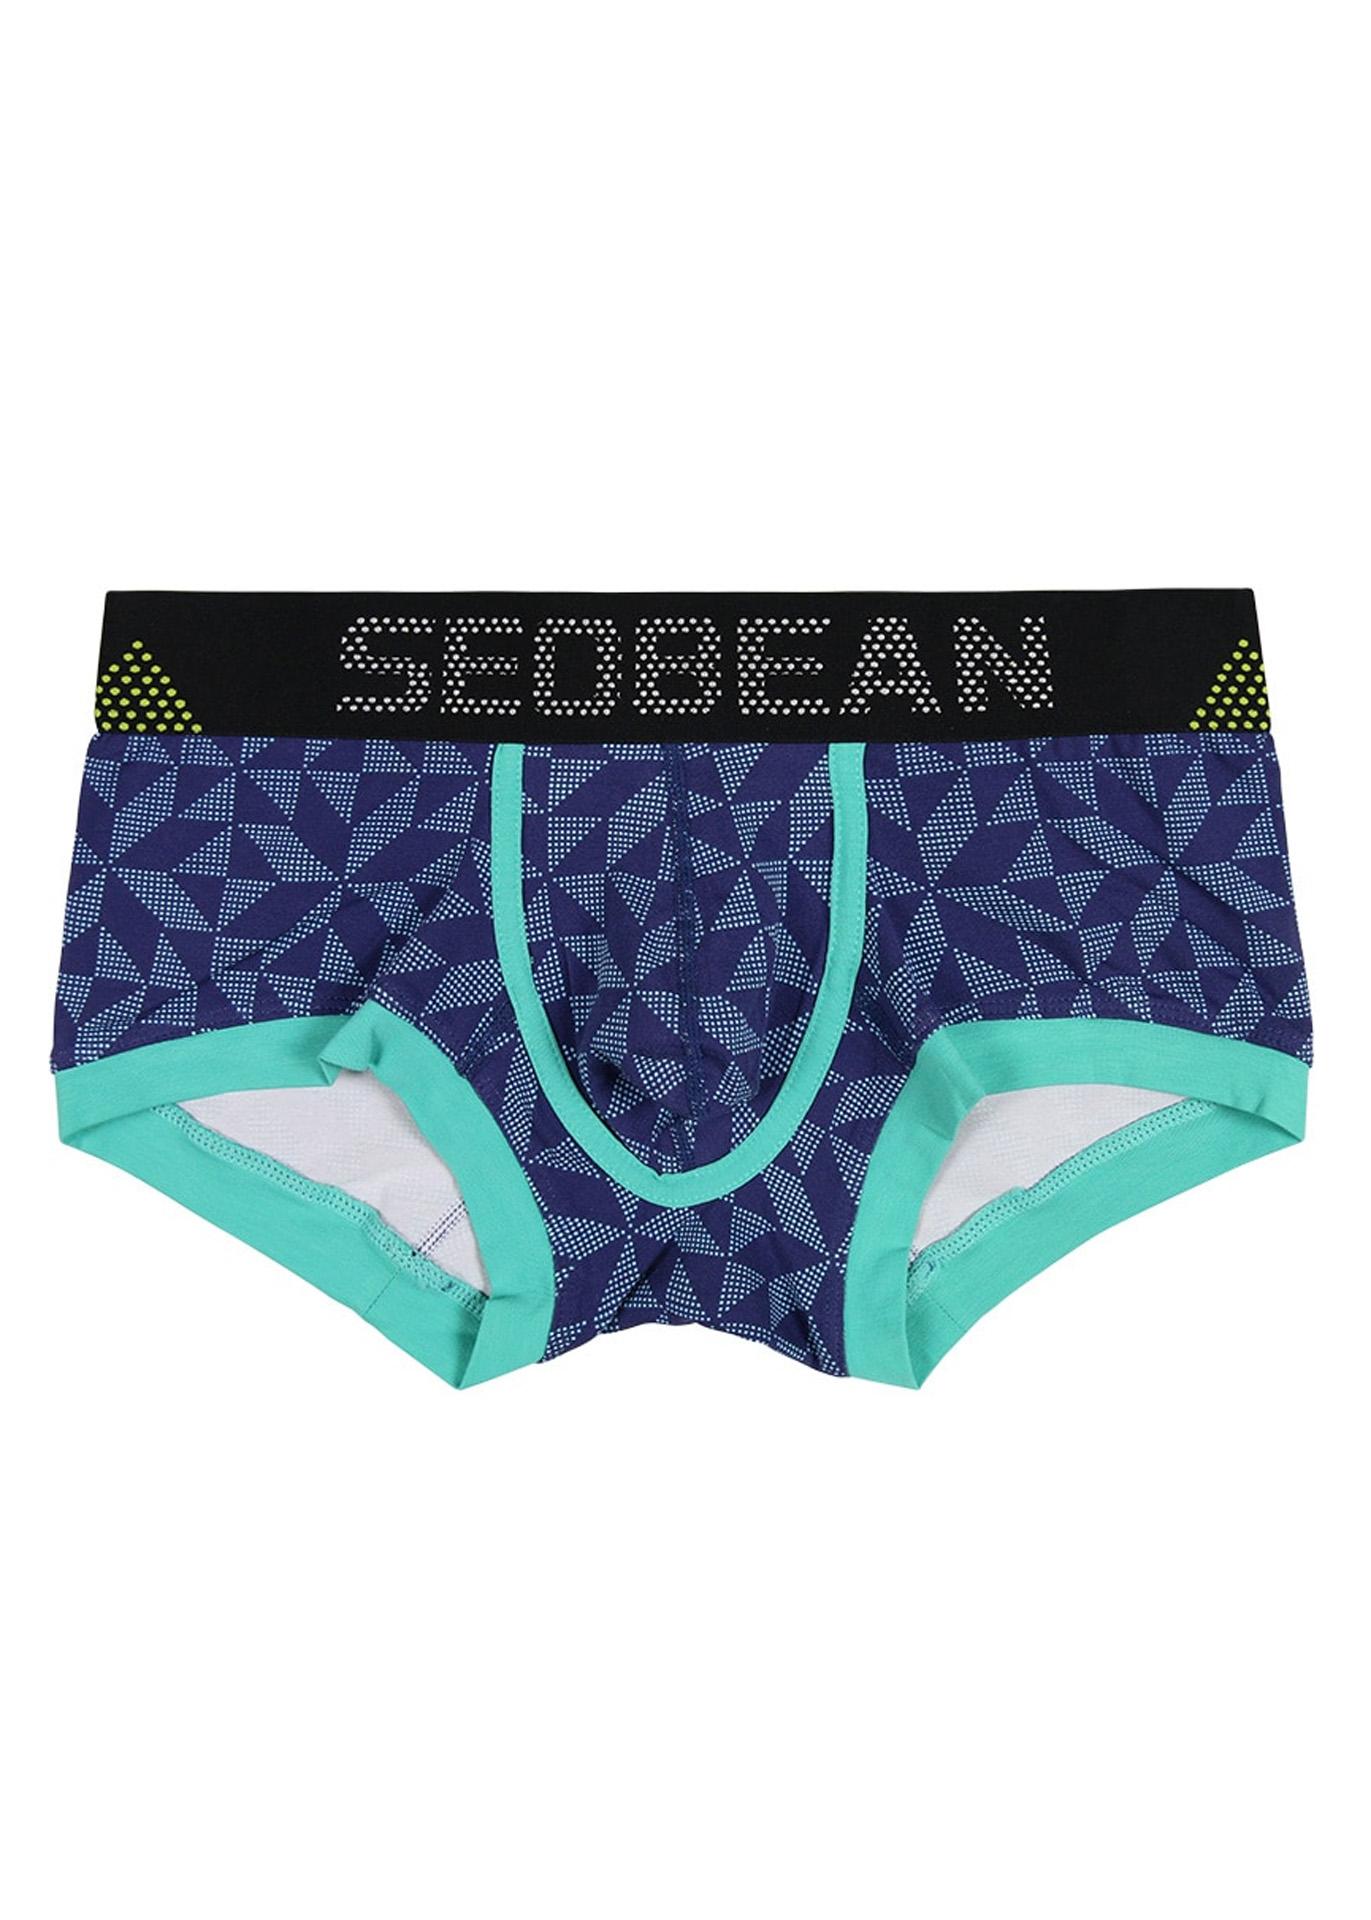 Quần Lót Boxer Nam Seobean S0213 - Chất Liệu Vải Cotton Cao Cấp Co Giãn 4 Chiều Thoáng Mát